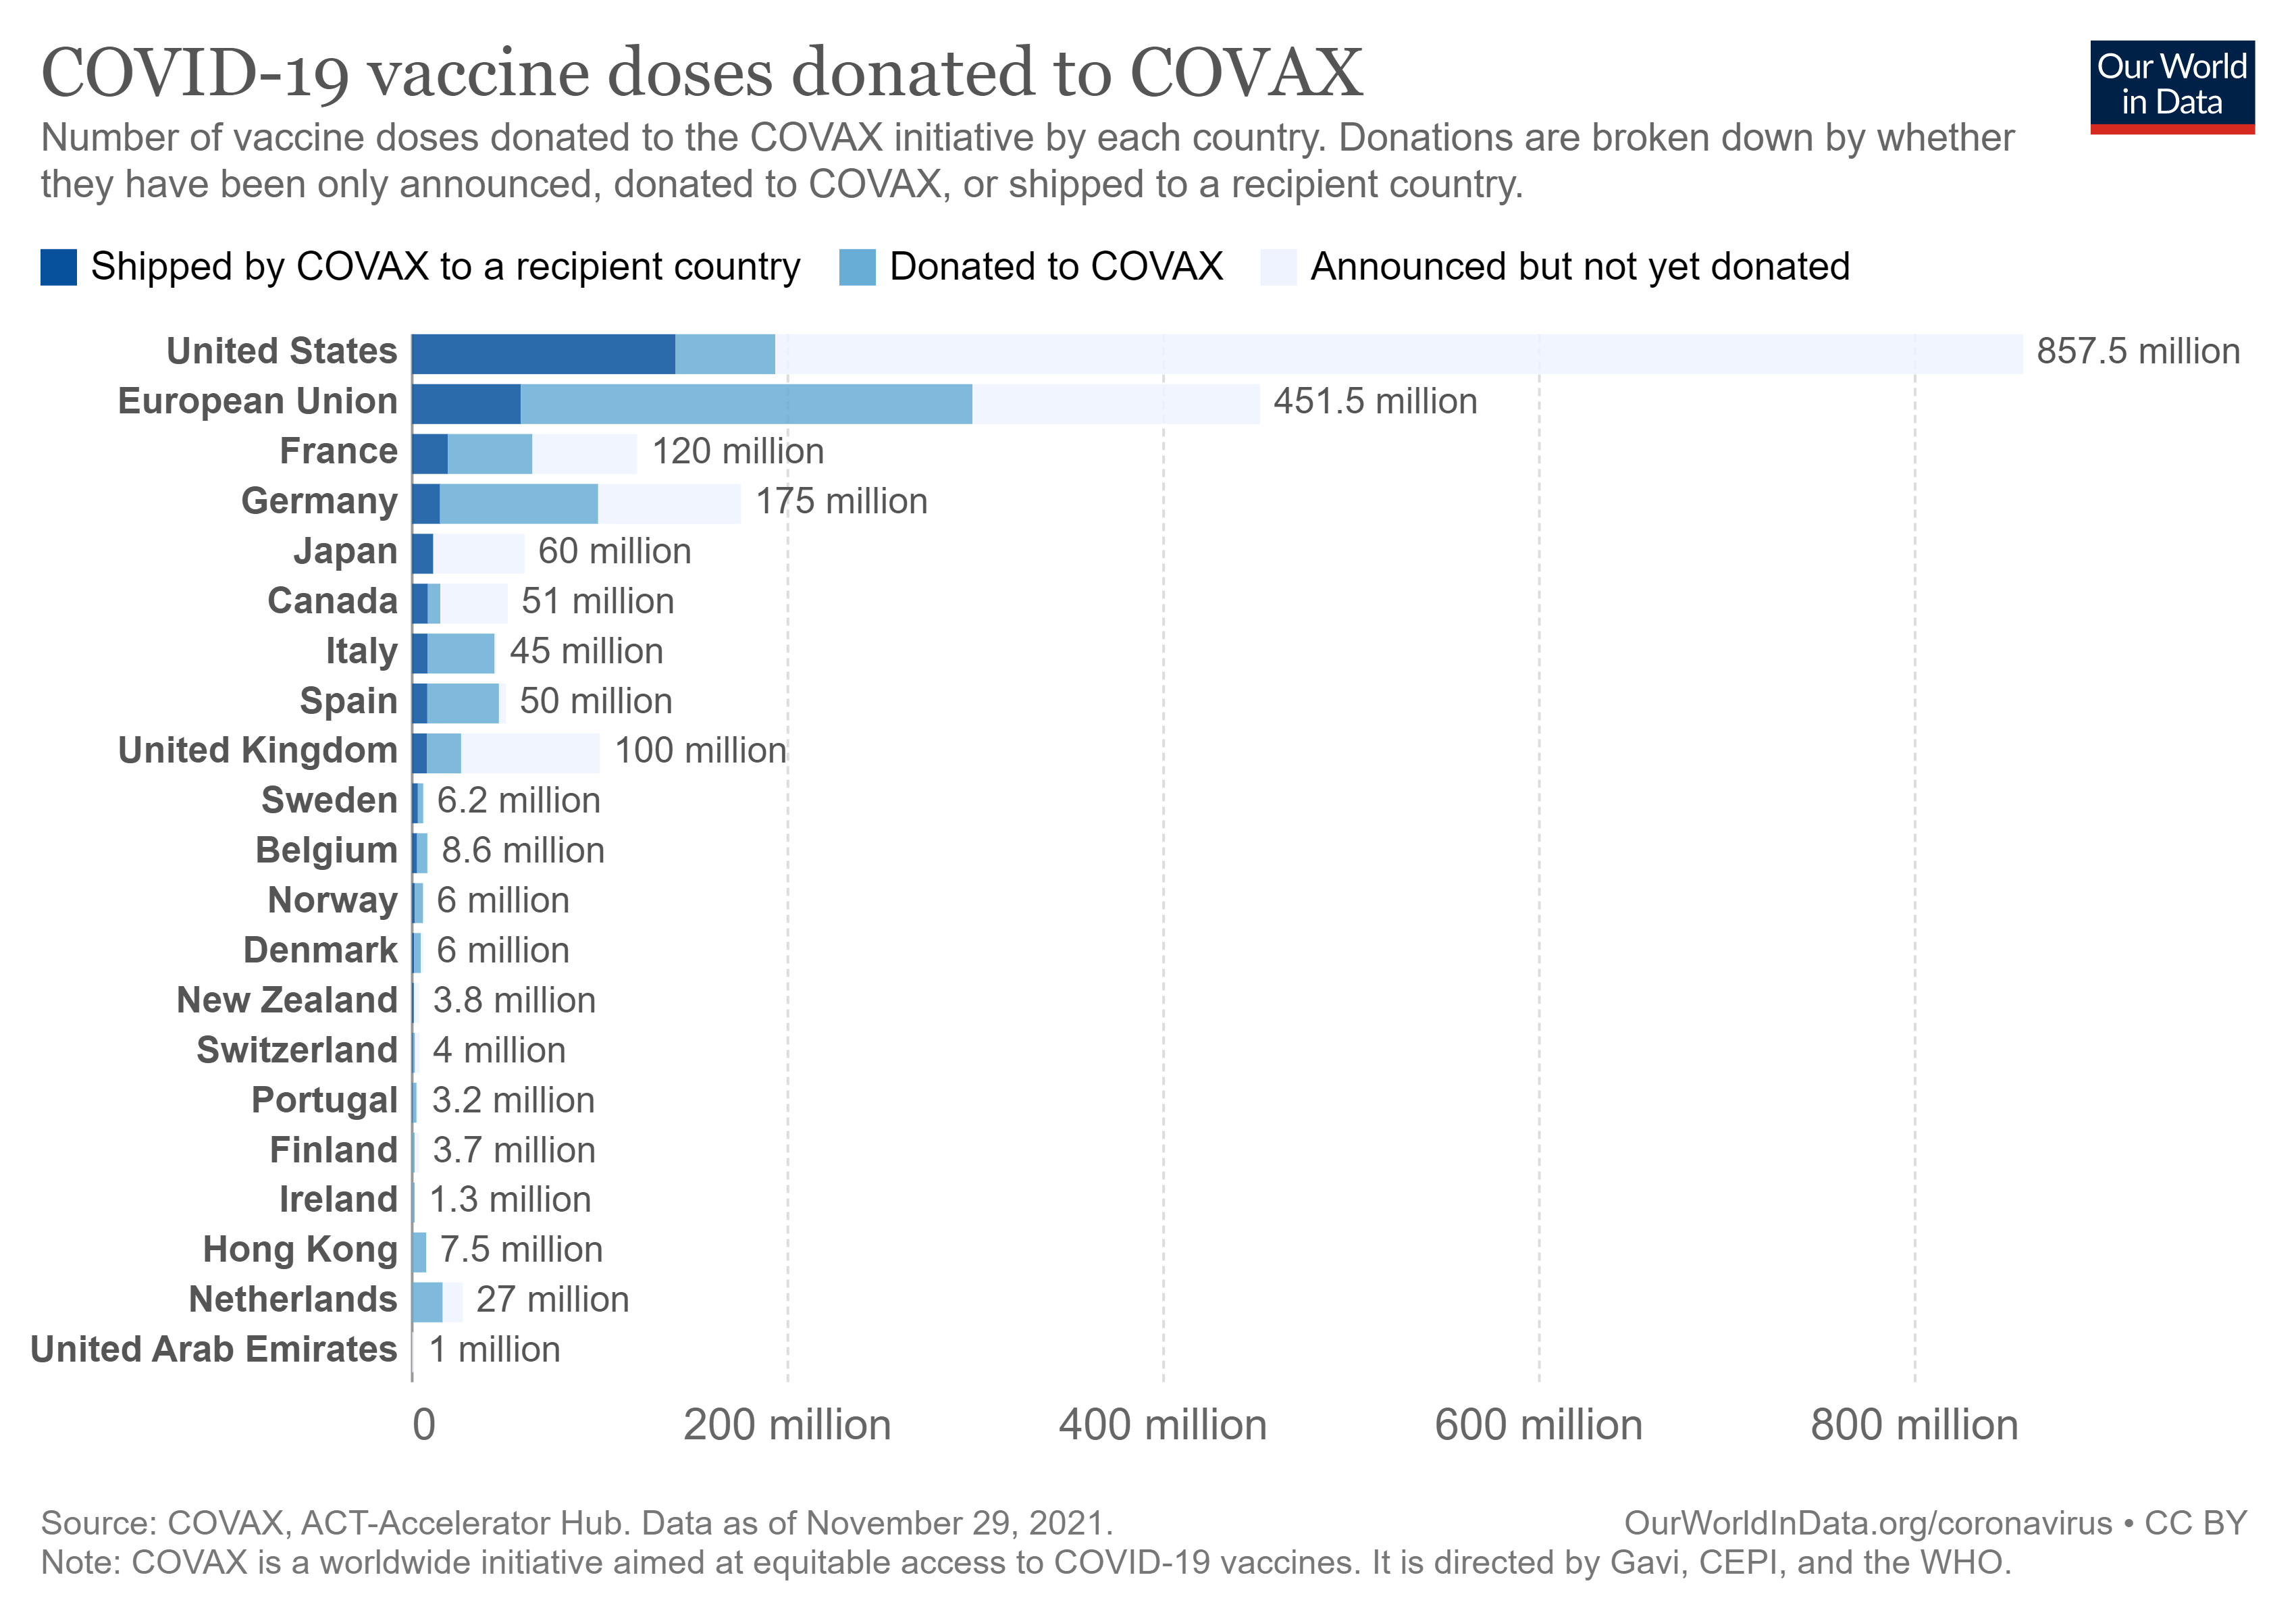 COVID-19 Vaccine Donations